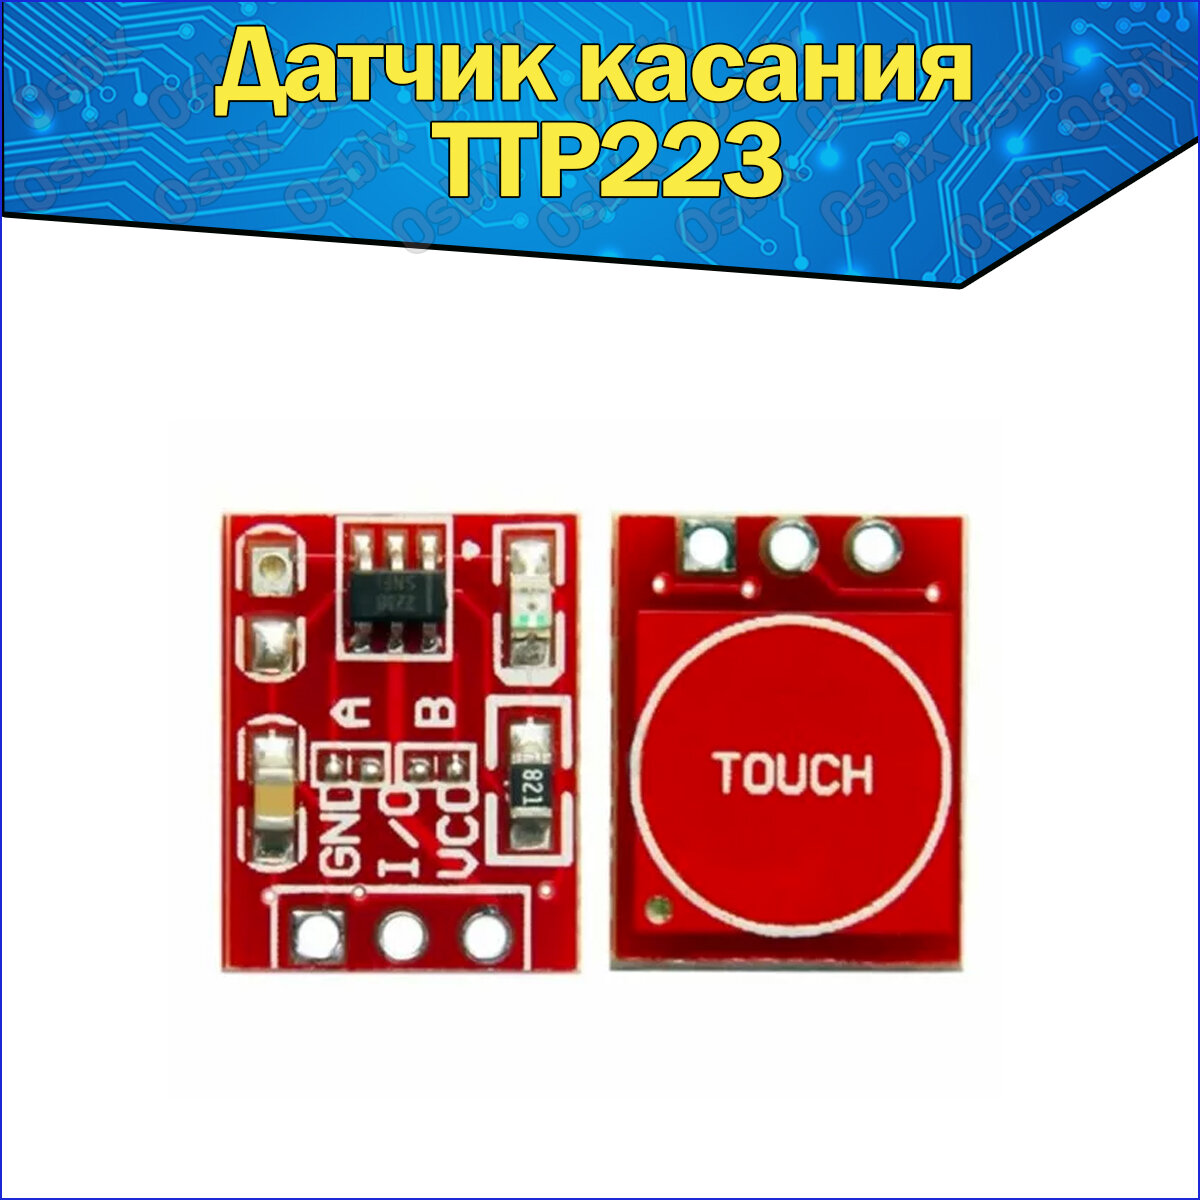 Сенсорный датчик касания TTP223 кнопка-выключатель комплектующие для платформы Ардуино (Arduino)